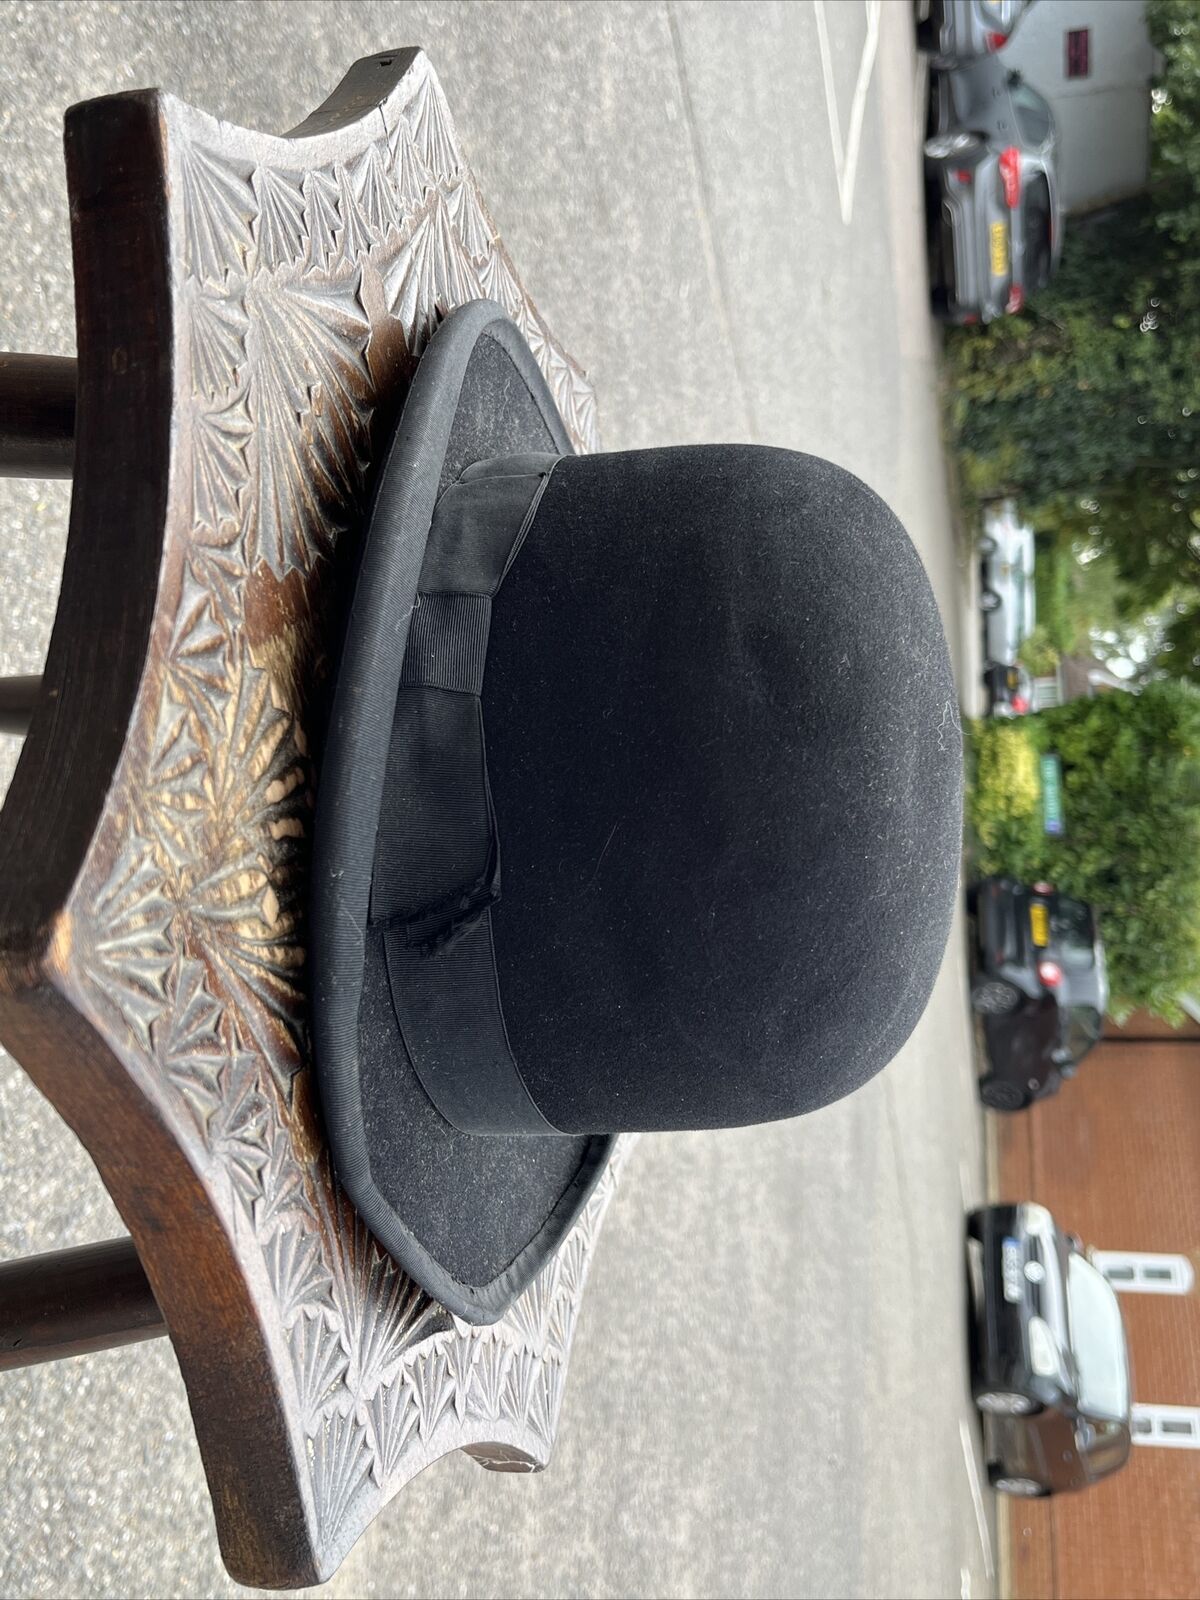 Edwardian Bowler Hat